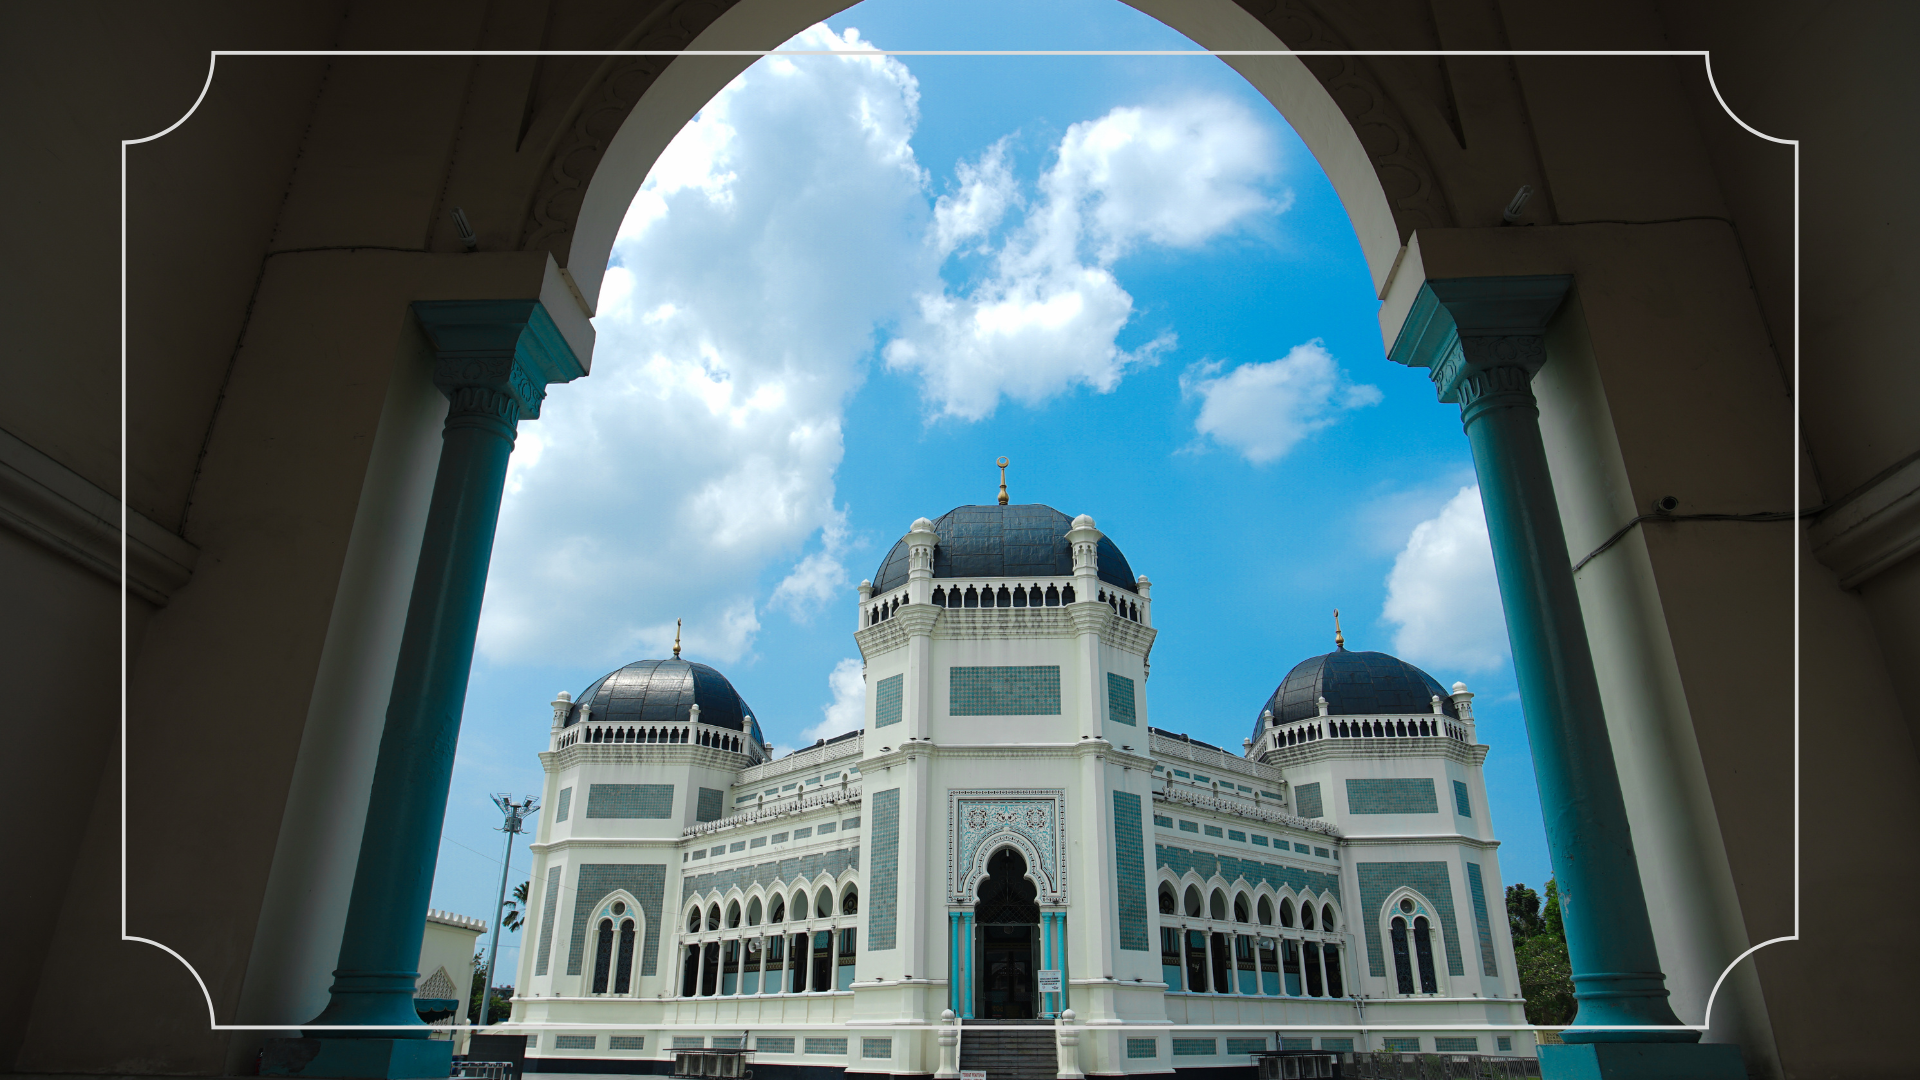 Tempat Wisata Medan Masjid Raya Medan